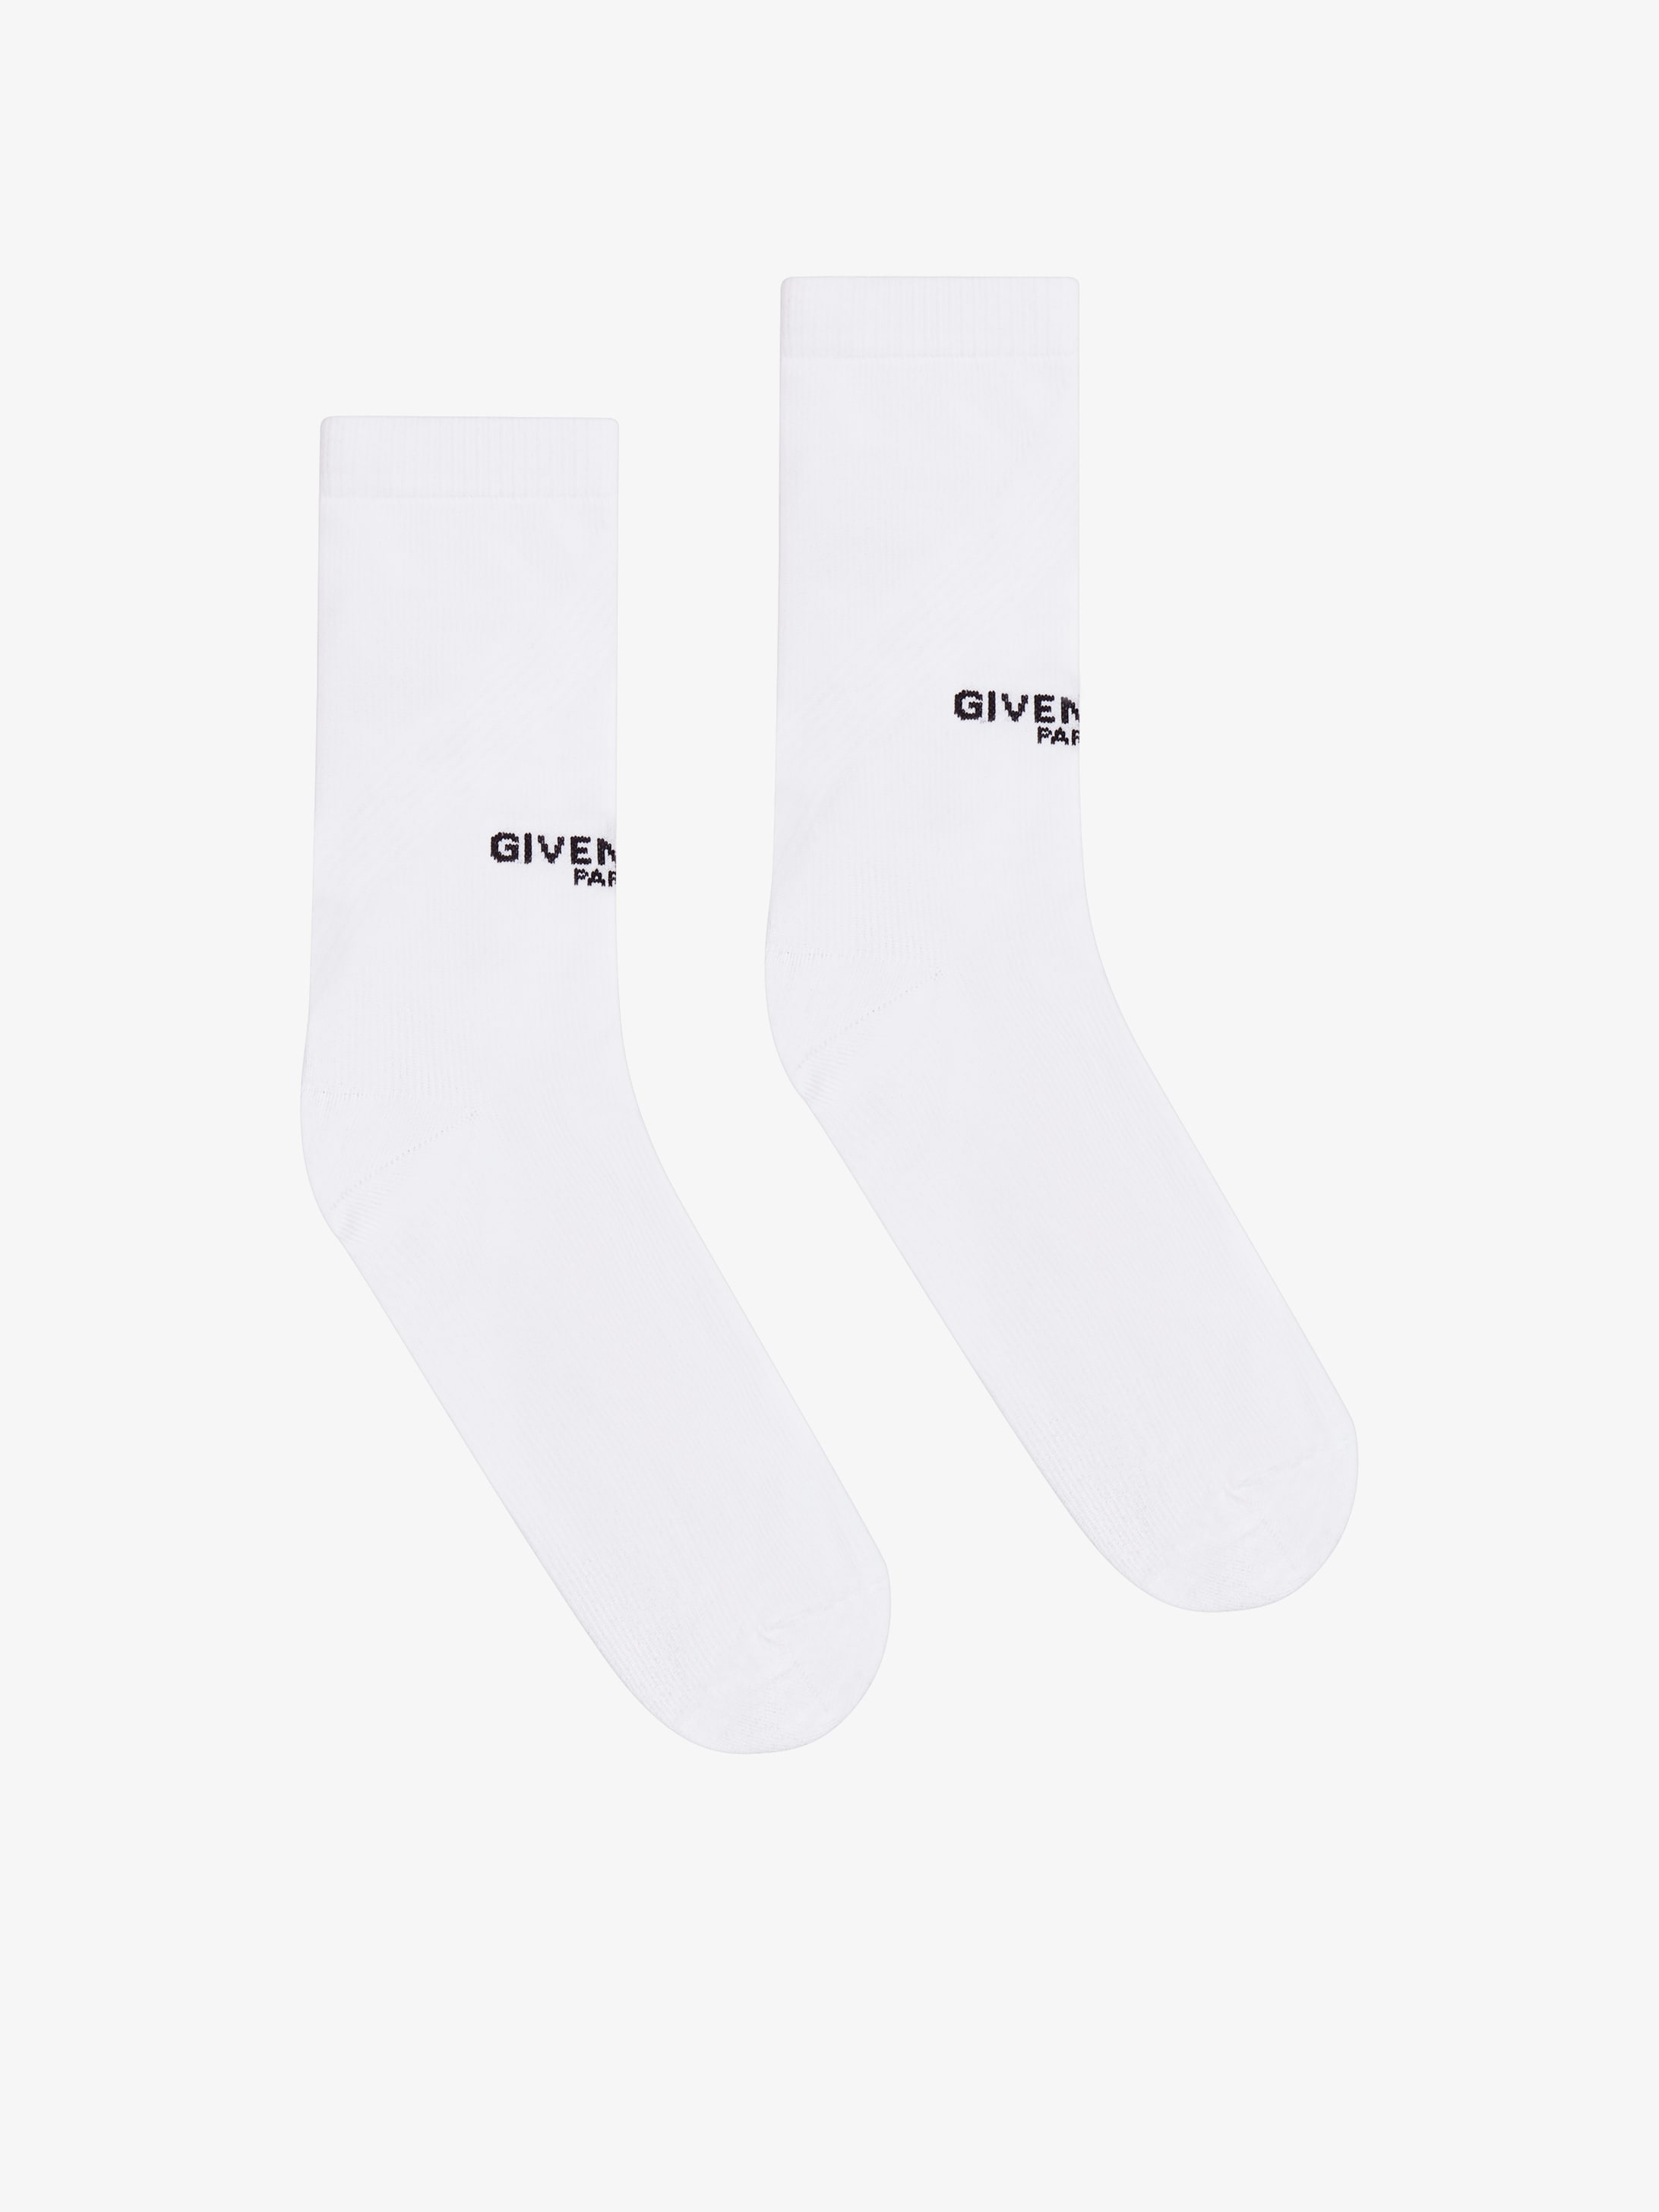 mens givenchy socks